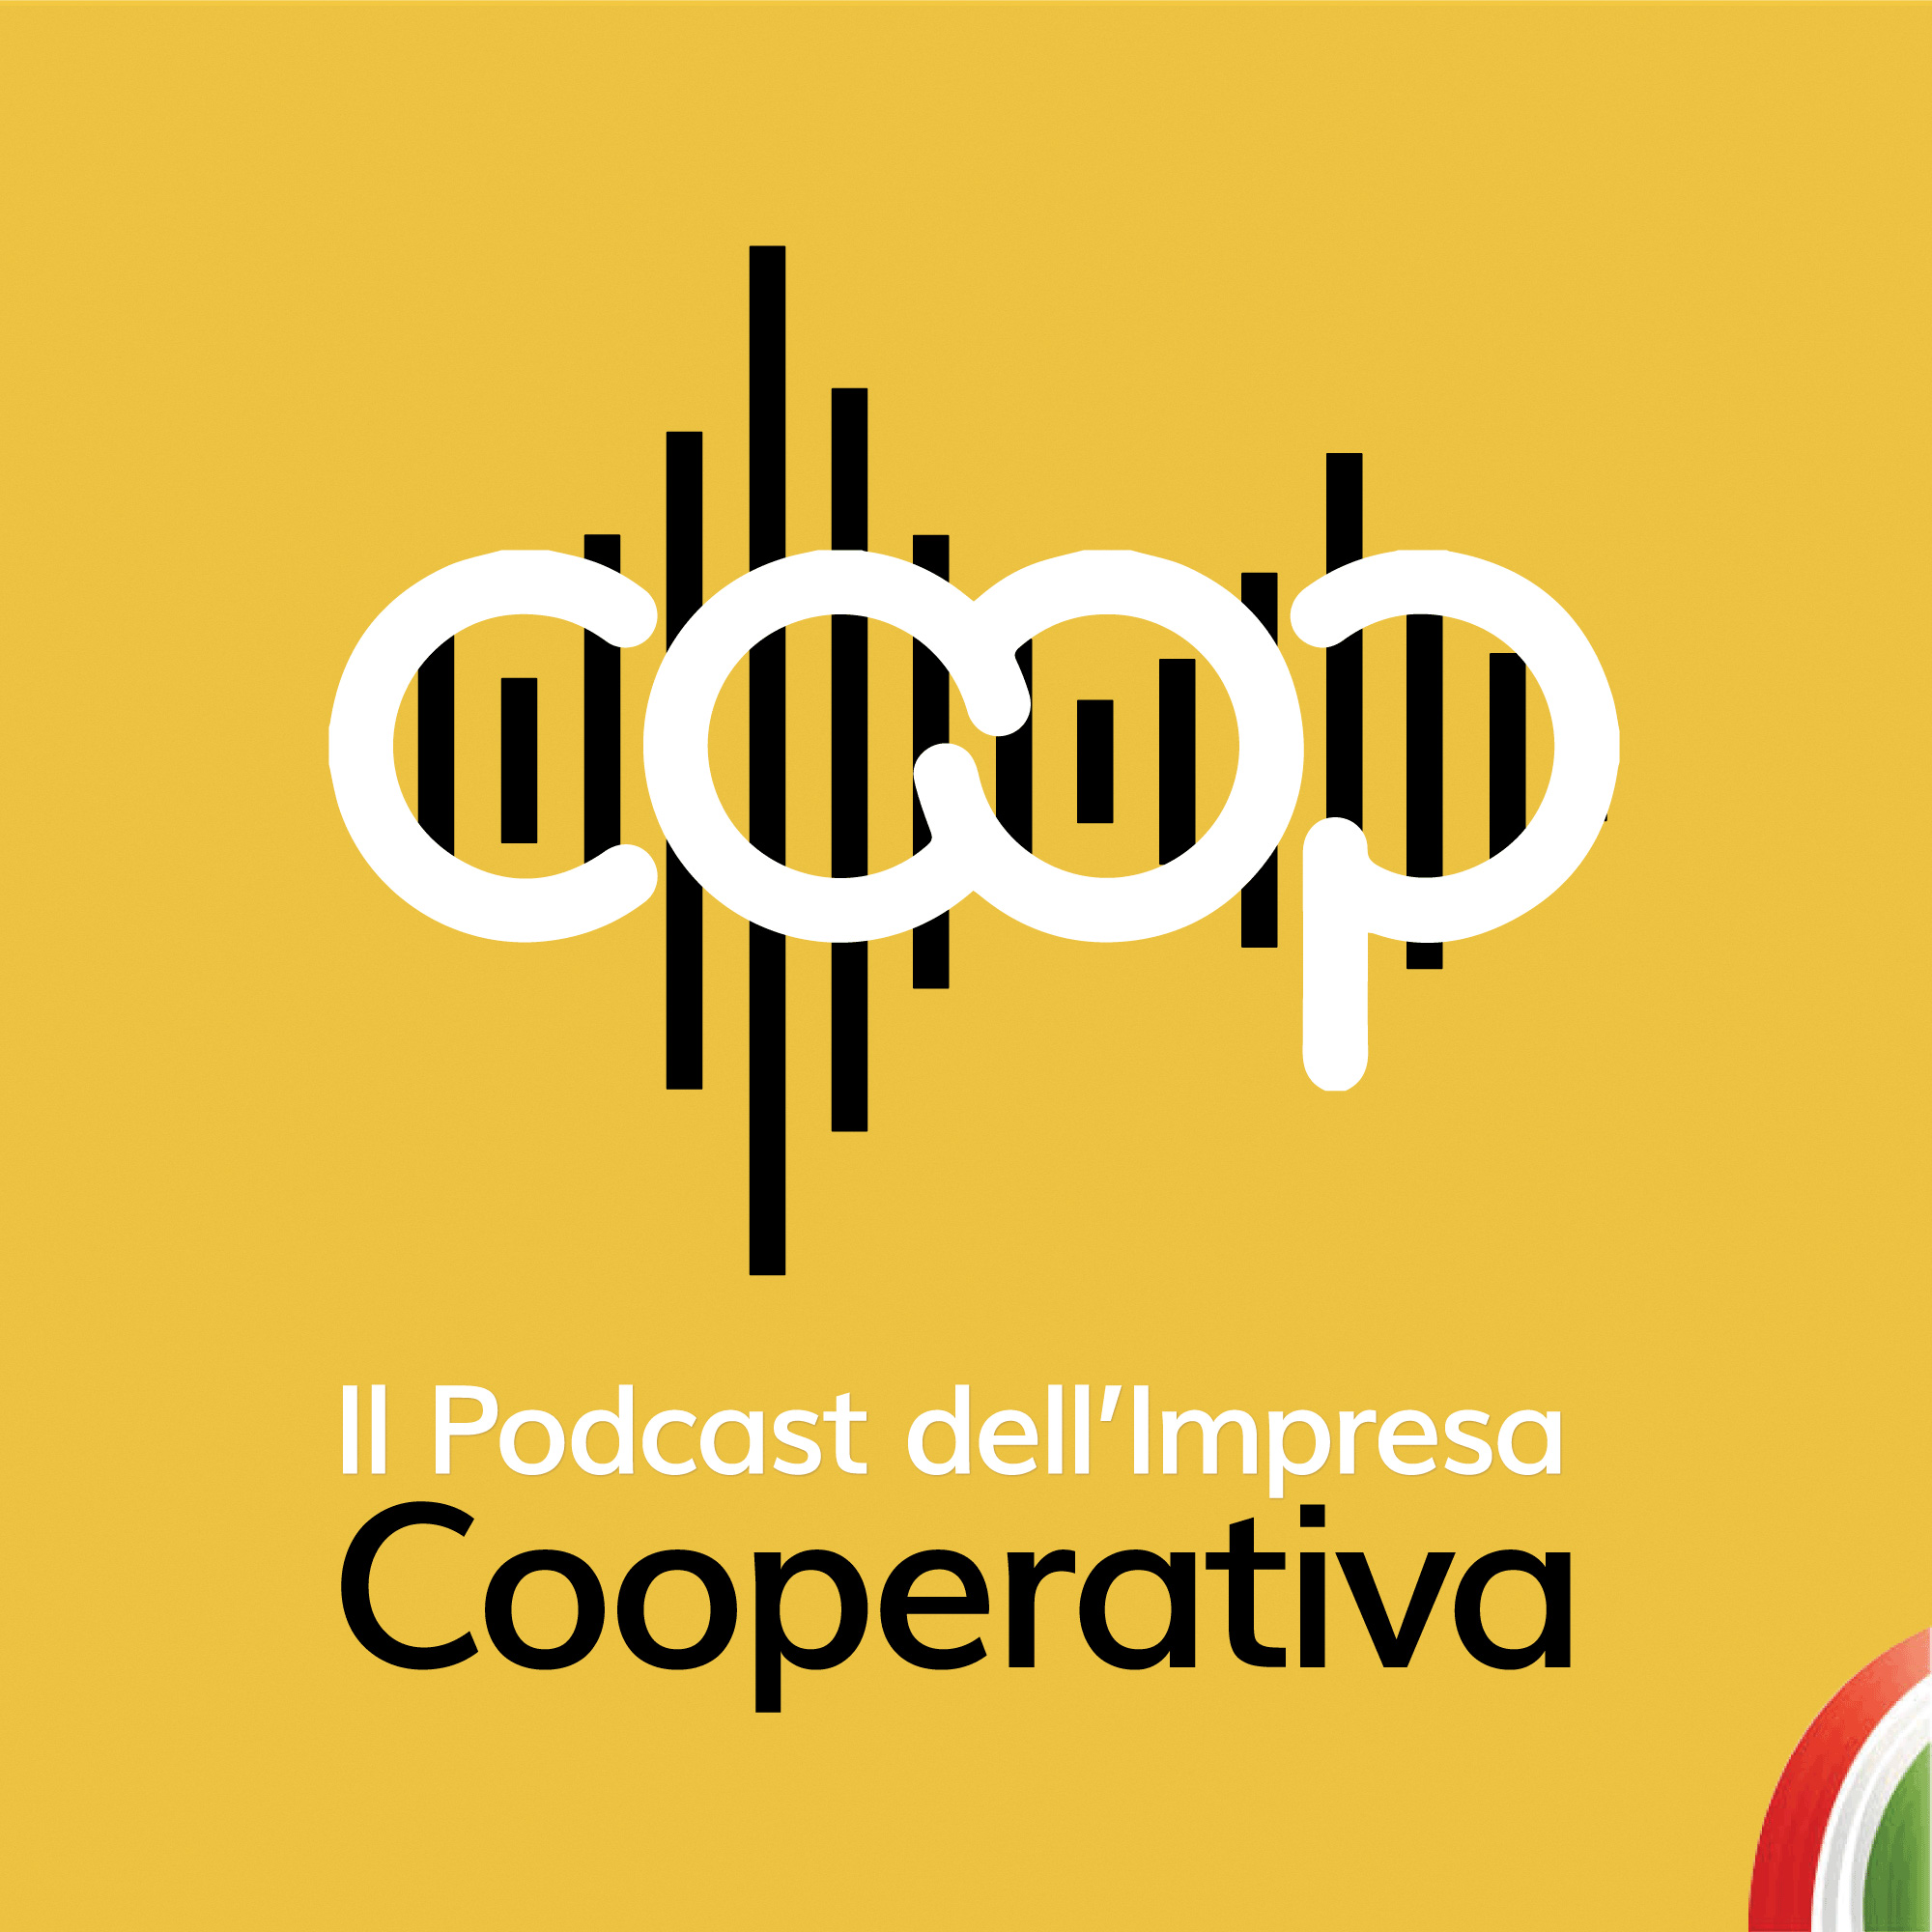 Al via la terza stagione de Il Podcast dell’Impresa Cooperativa. Ascolta il primo episodio, dedicato a GranTerre